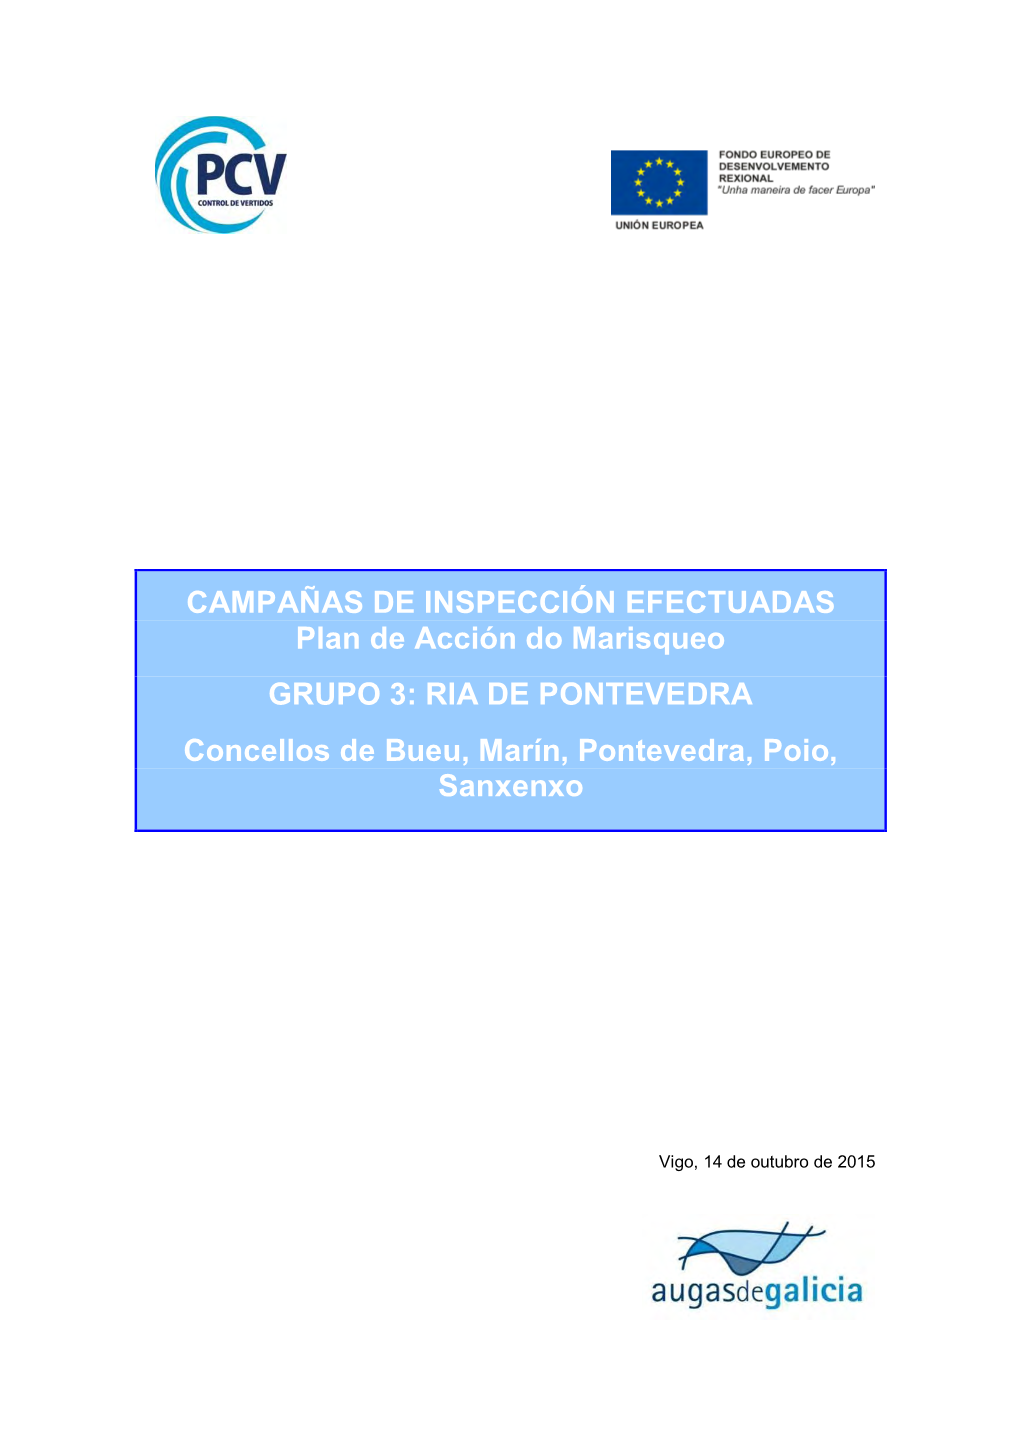 CAMPAÑAS DE INSPECCIÓN EFECTUADAS Plan De Acción Do Marisqueo GRUPO 3: RIA DE PONTEVEDRA Concellos De Bueu, Marín, Pontevedra, Poio, Sanxenxo